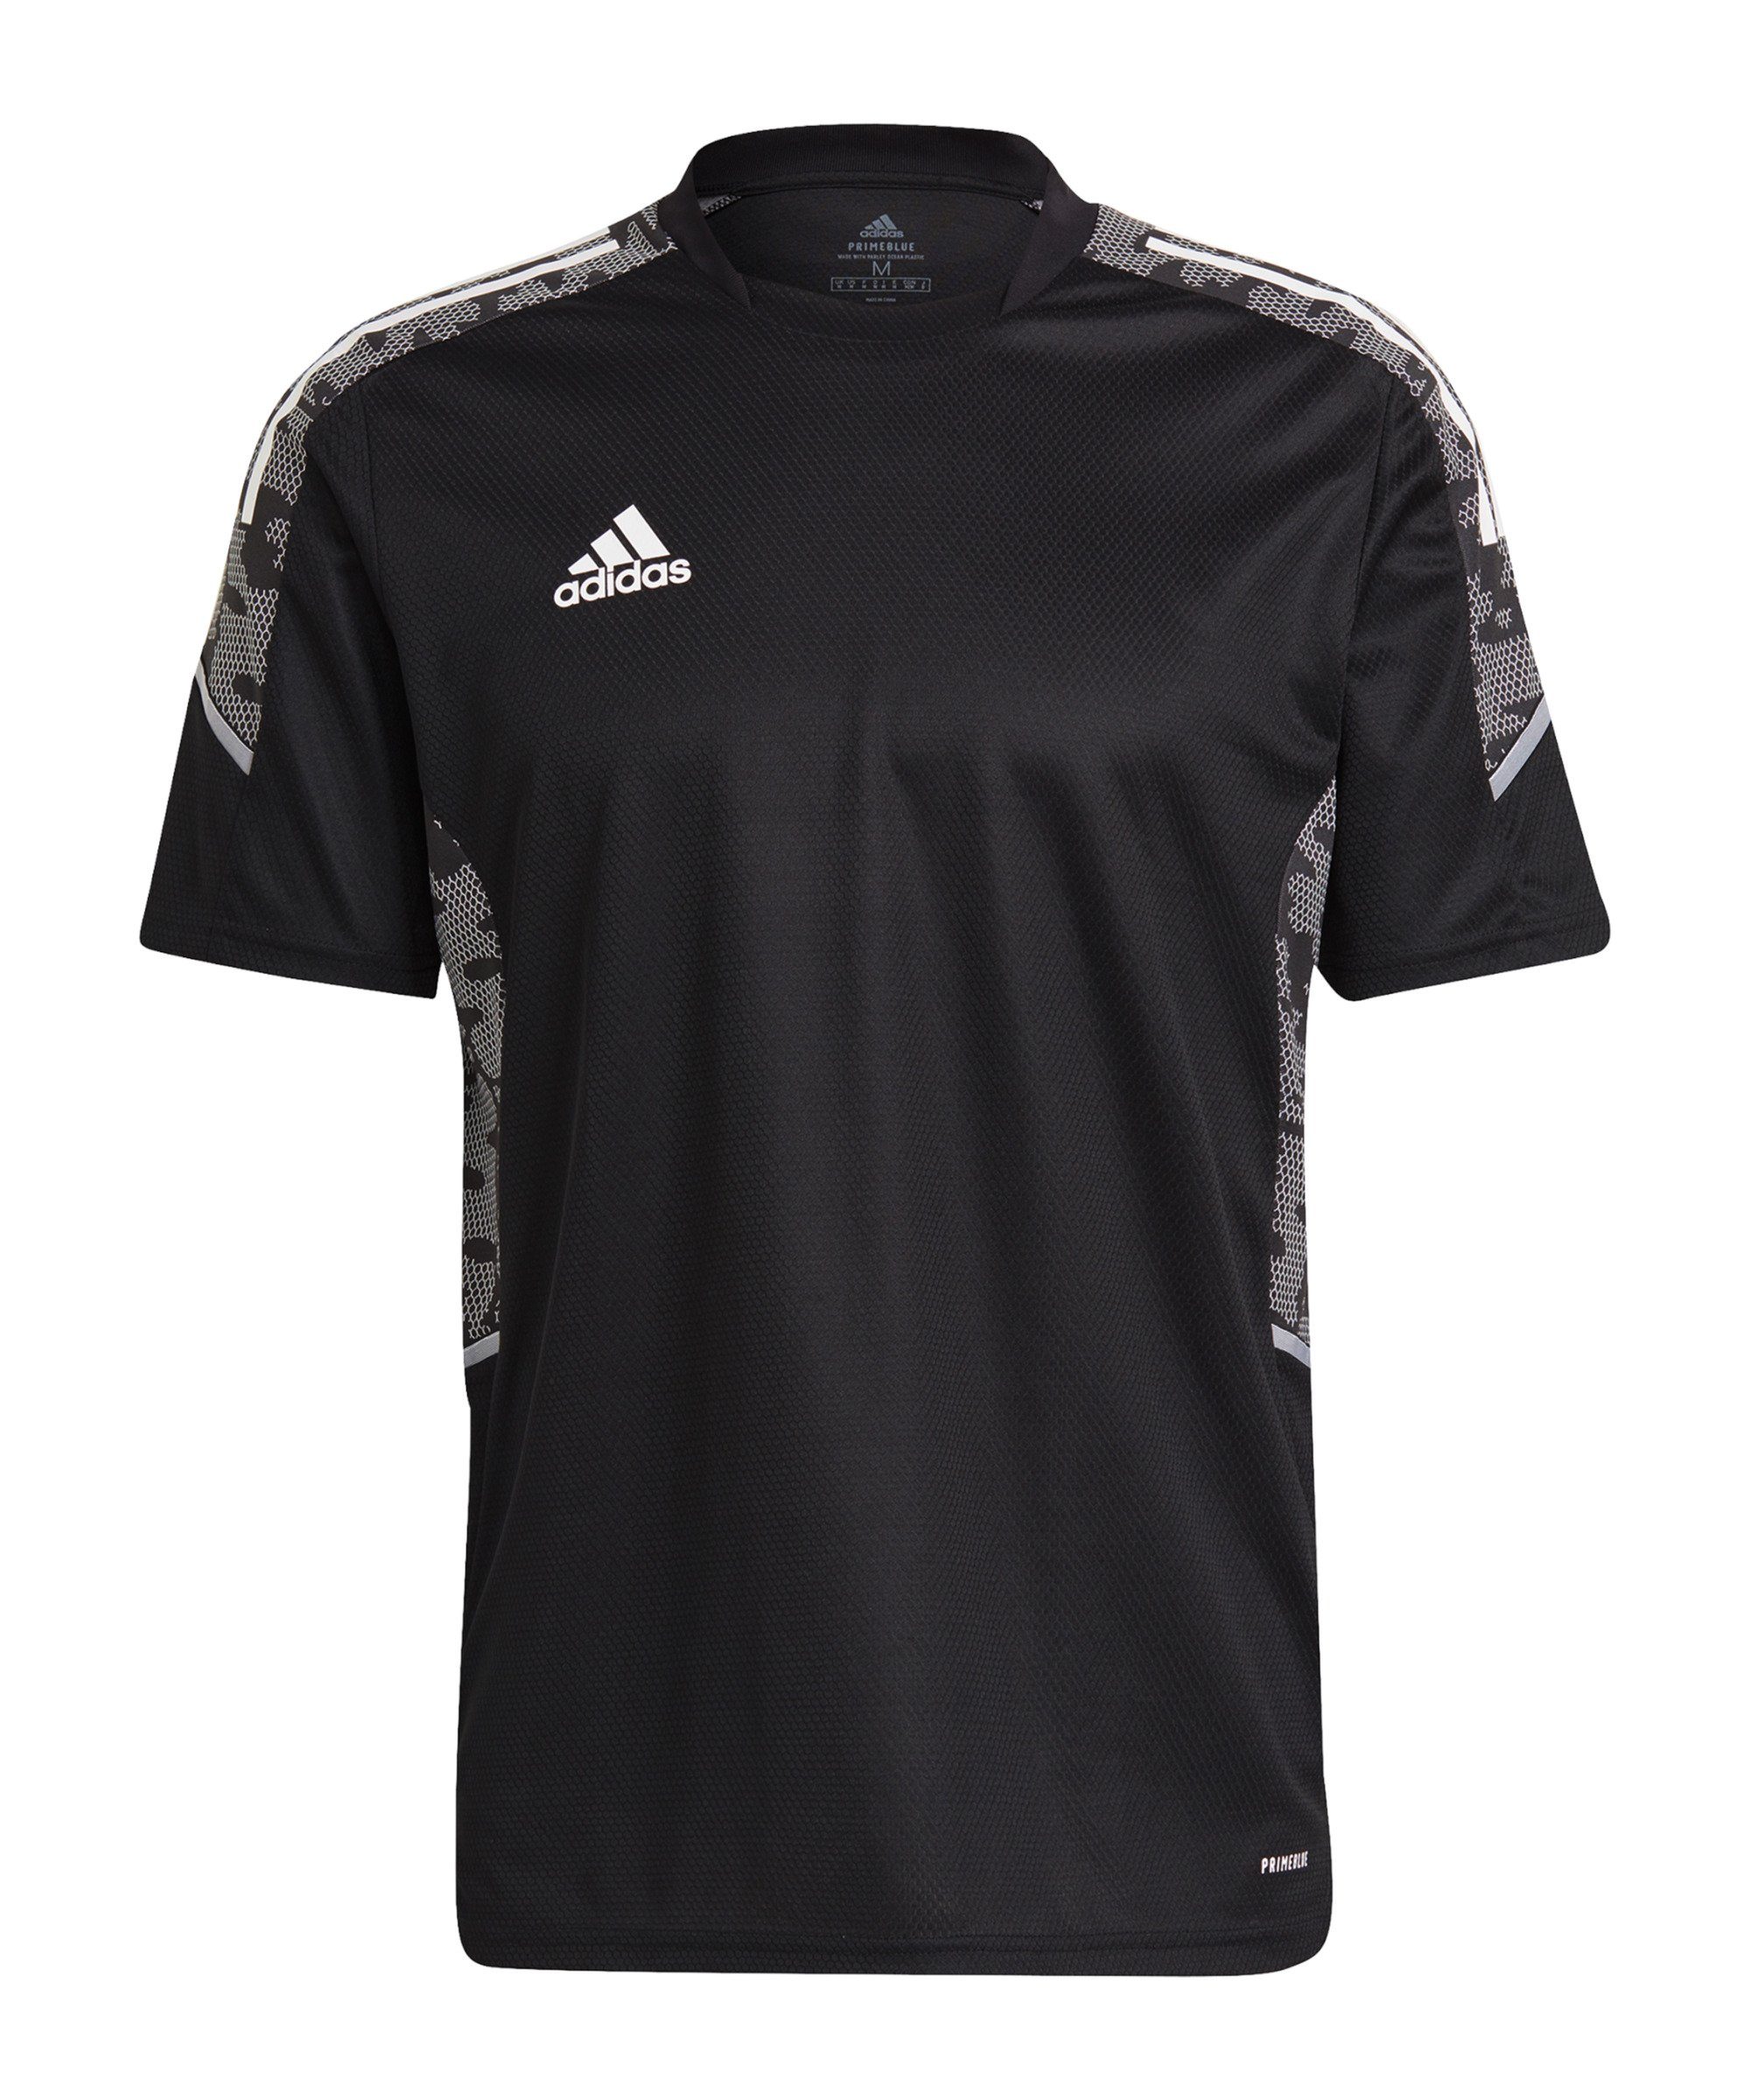 schwarzweiss Performance T-Shirt adidas default Trainingsshirt 21 Condivo